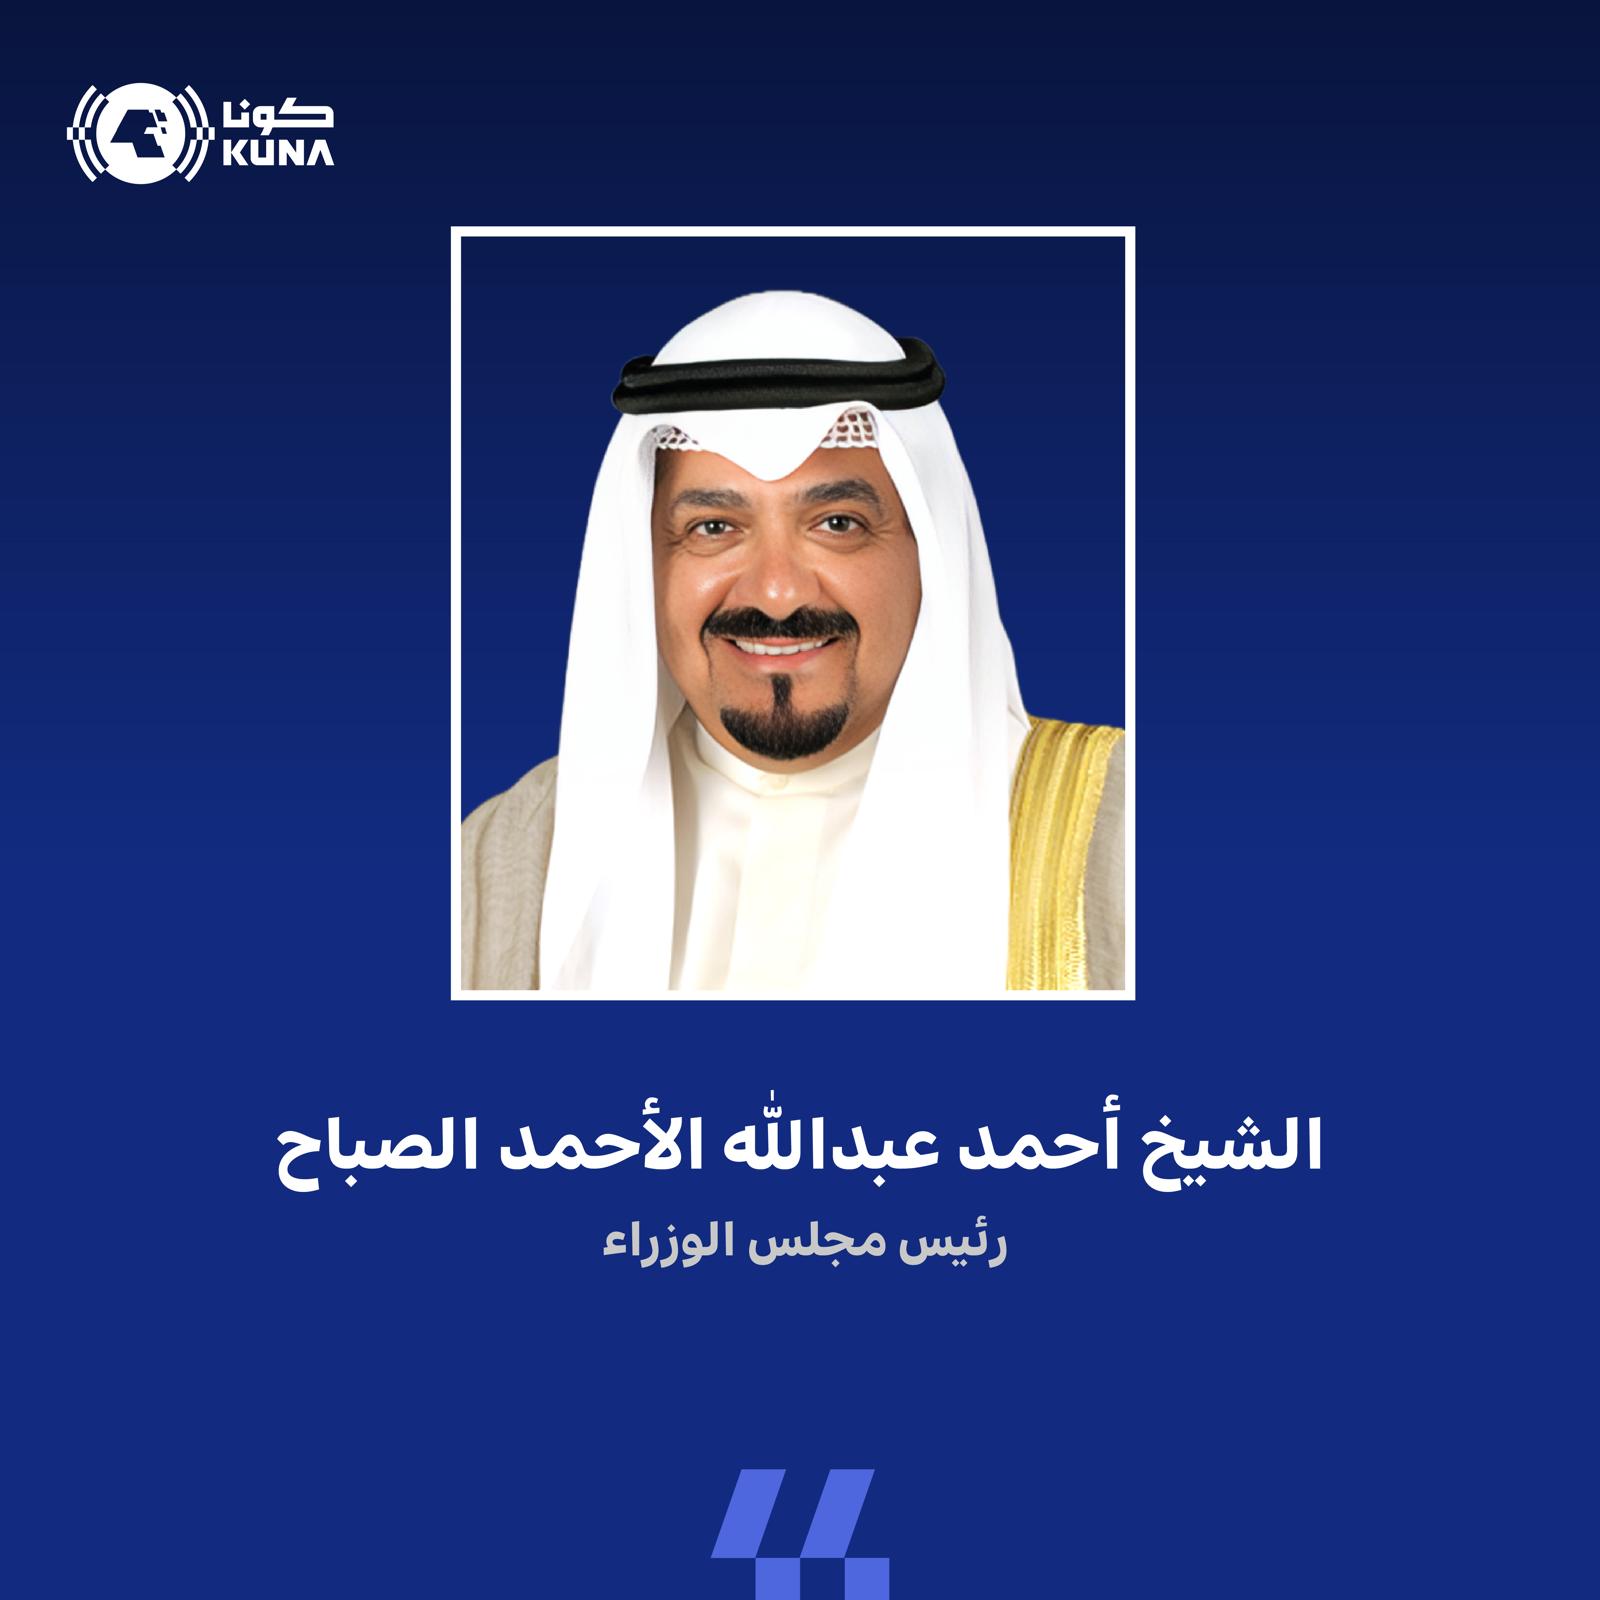 الشيخ أحمد عبدالله الأحمد الصباح رئيس مجلس الوزراء الكويتي (كونا)